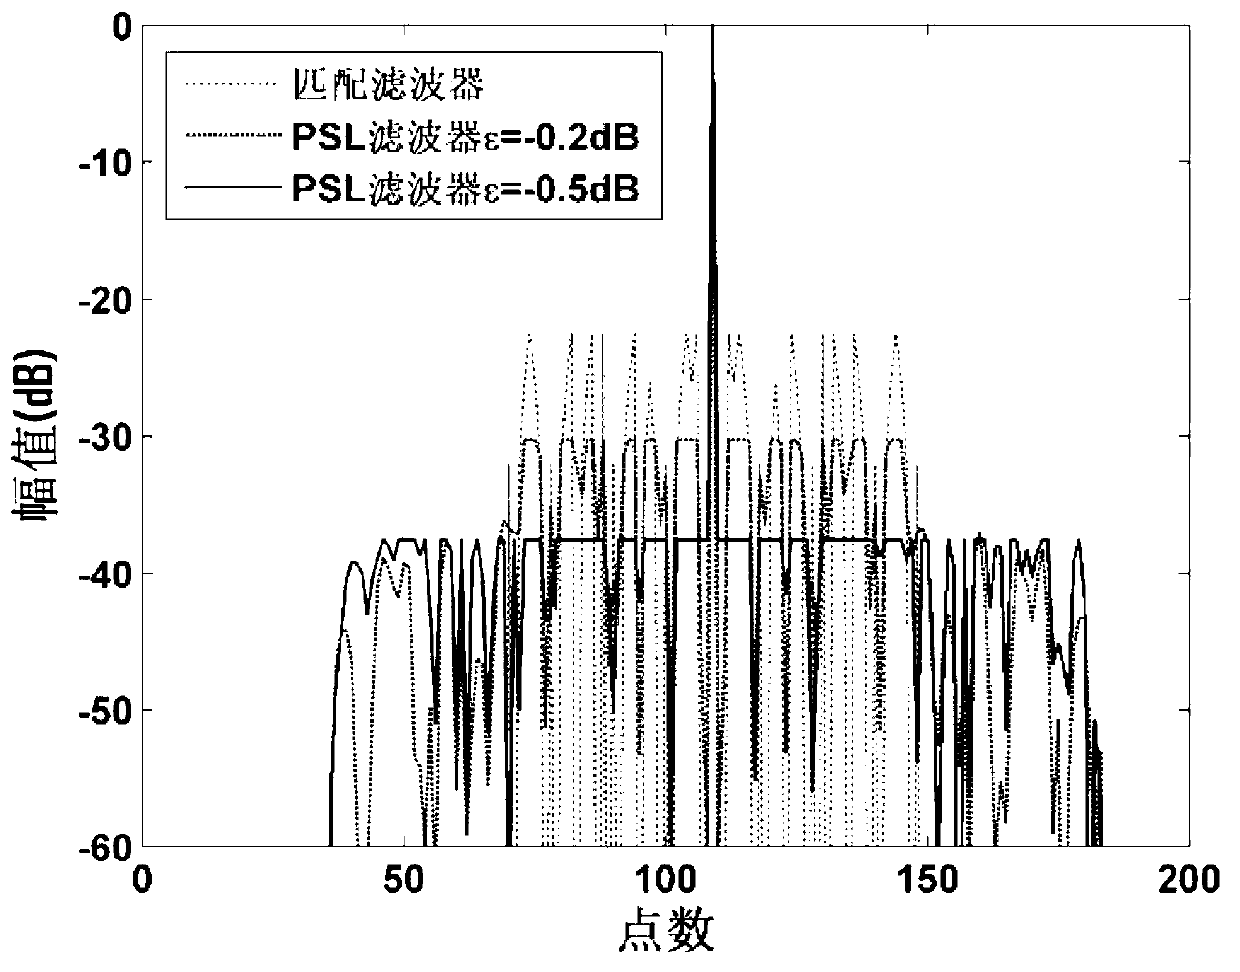 Radar pulse compression filter optimization design method applied to random signal waveforms